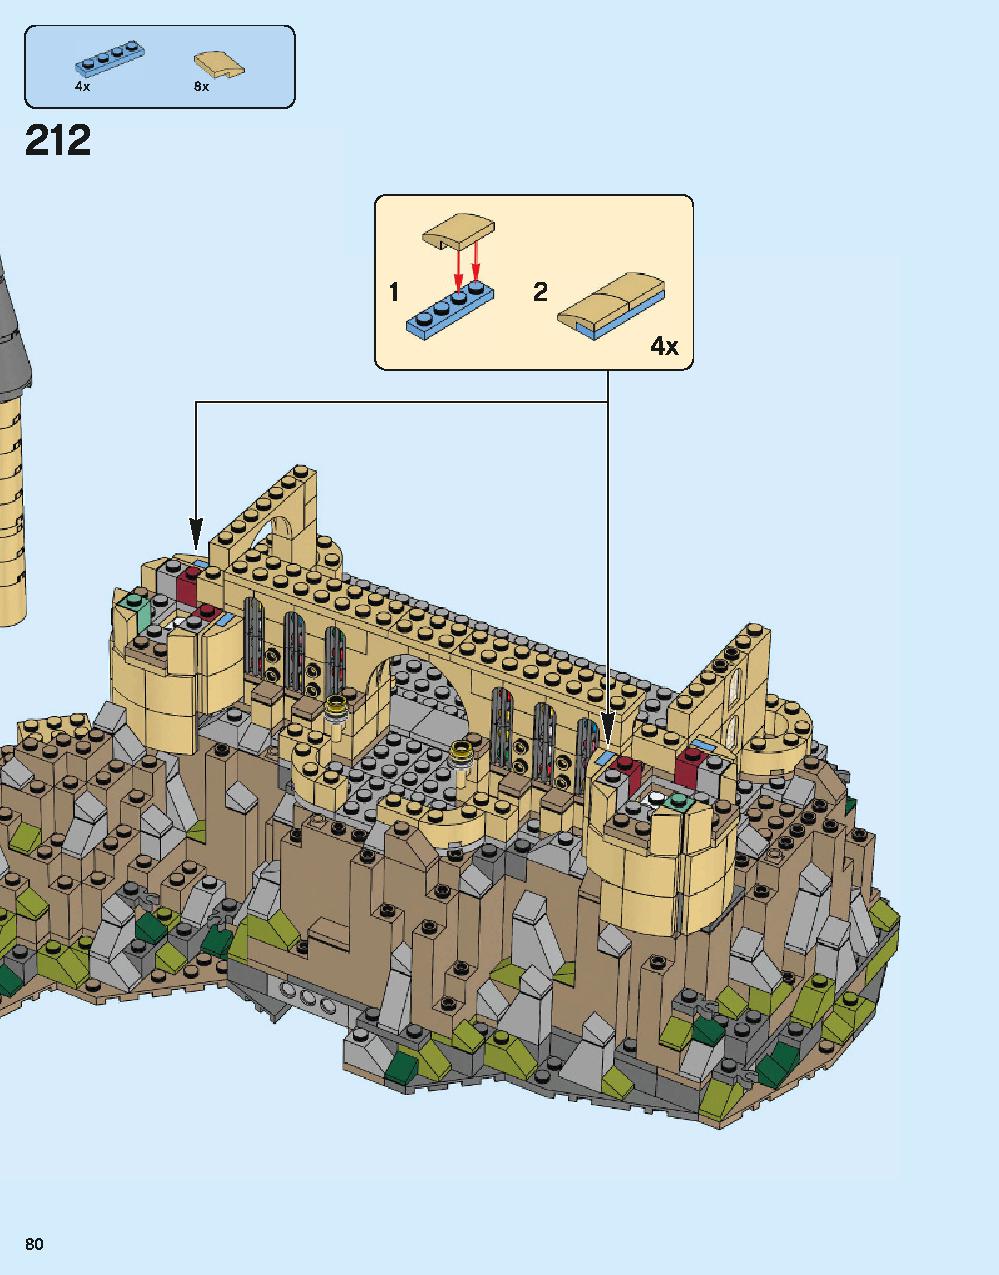 ホグワーツ城 71043 レゴの商品情報 レゴの説明書・組立方法 80 page